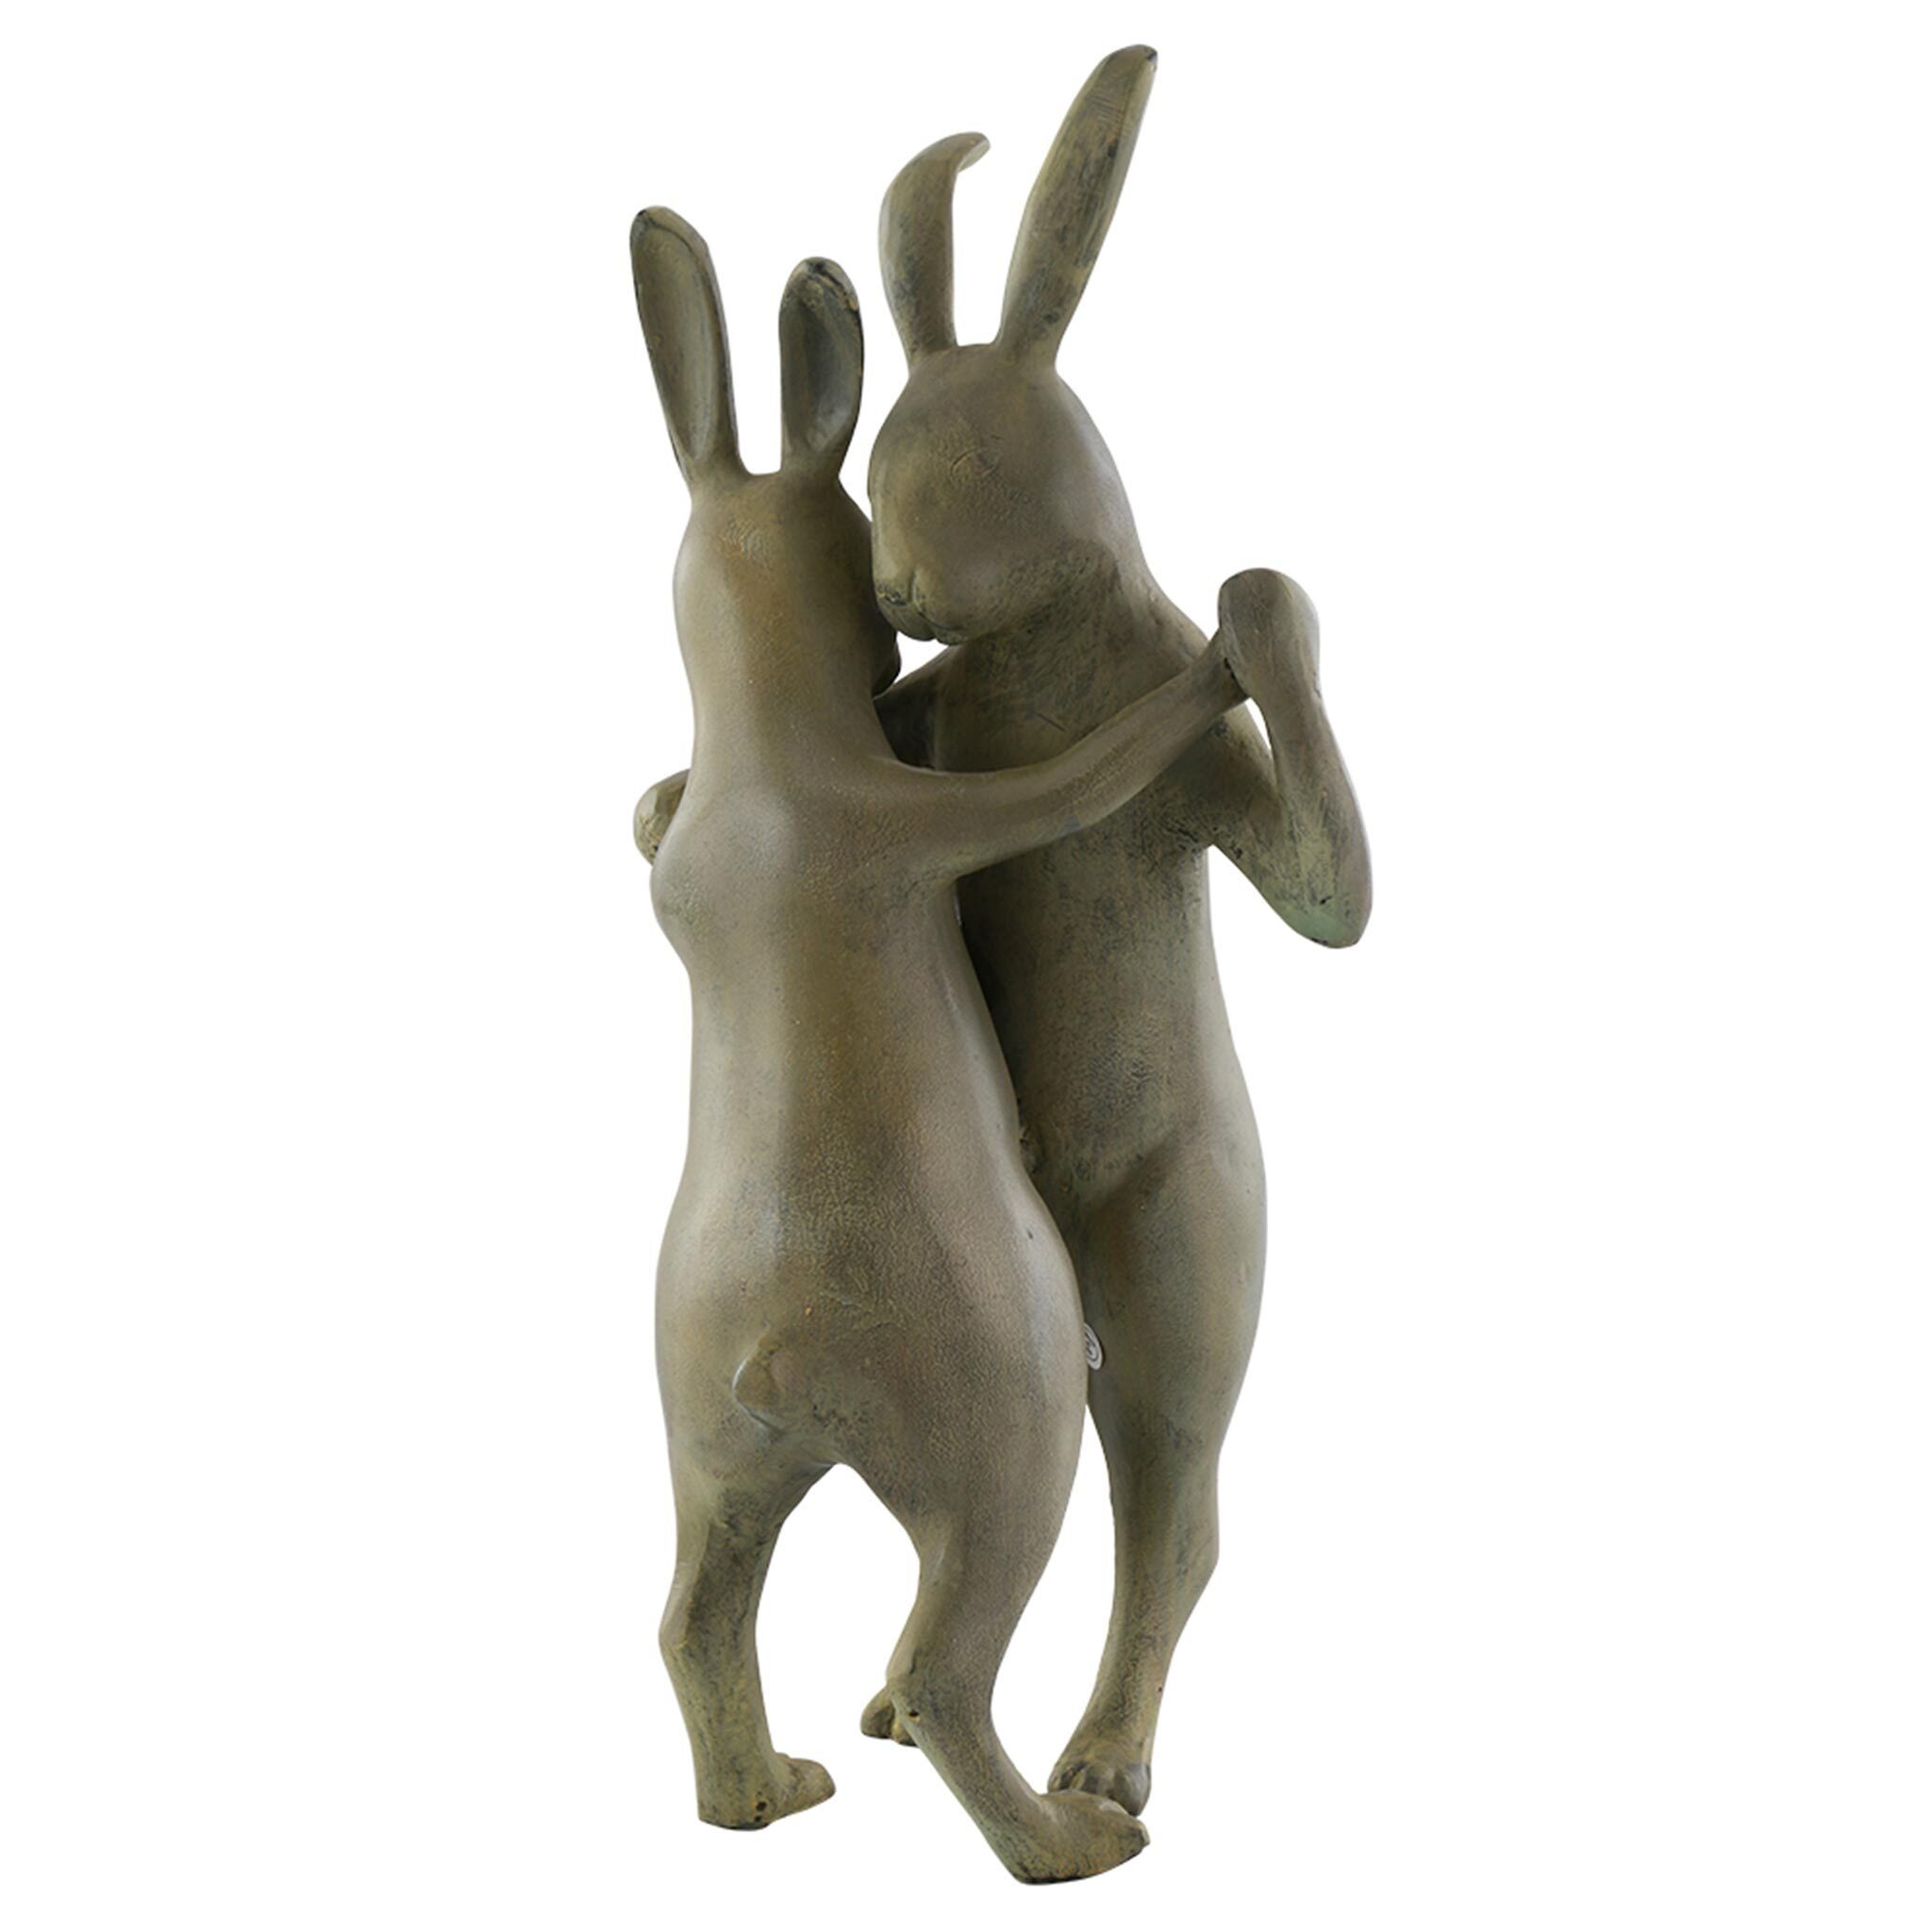 SPI Home 33674 Playful Bunny Rabbit With Bird Friend Garden Sculpture Statue